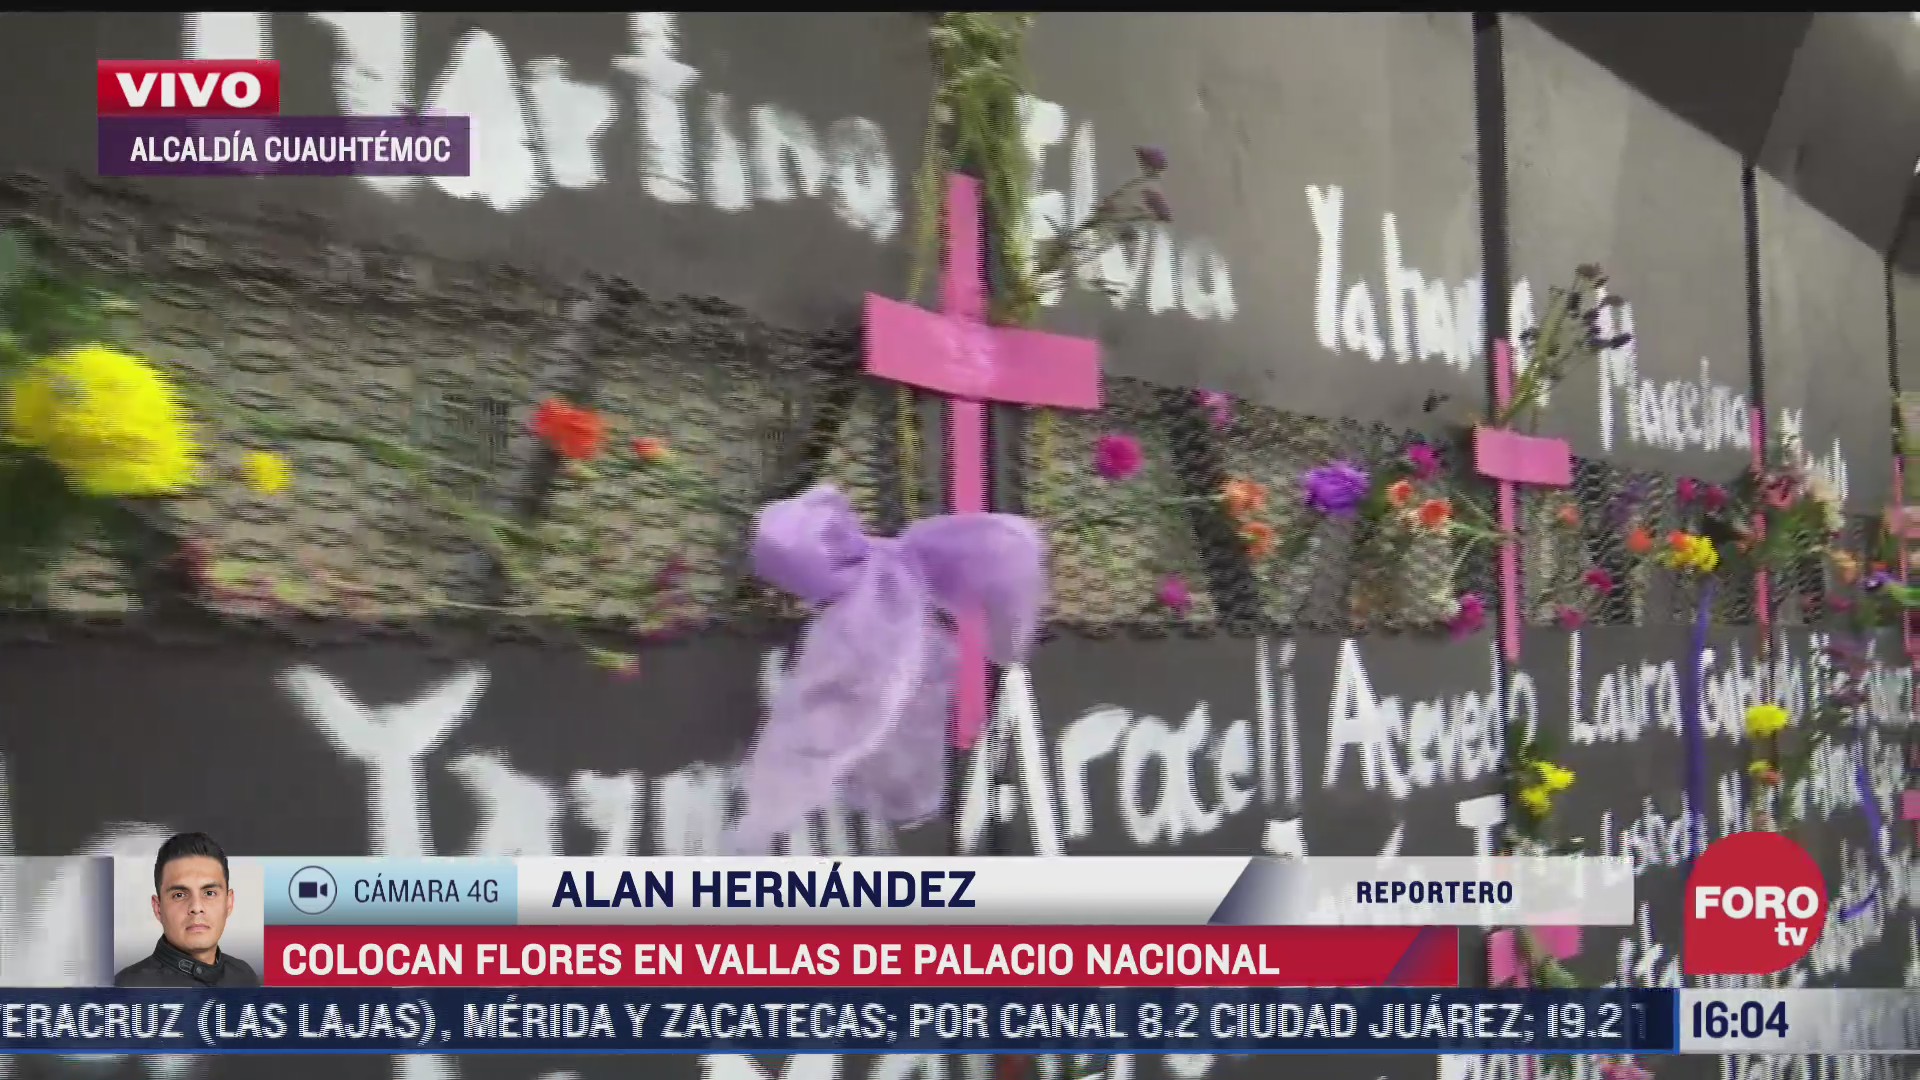 feministas colocan flores y pintan vallas en palacio nacional